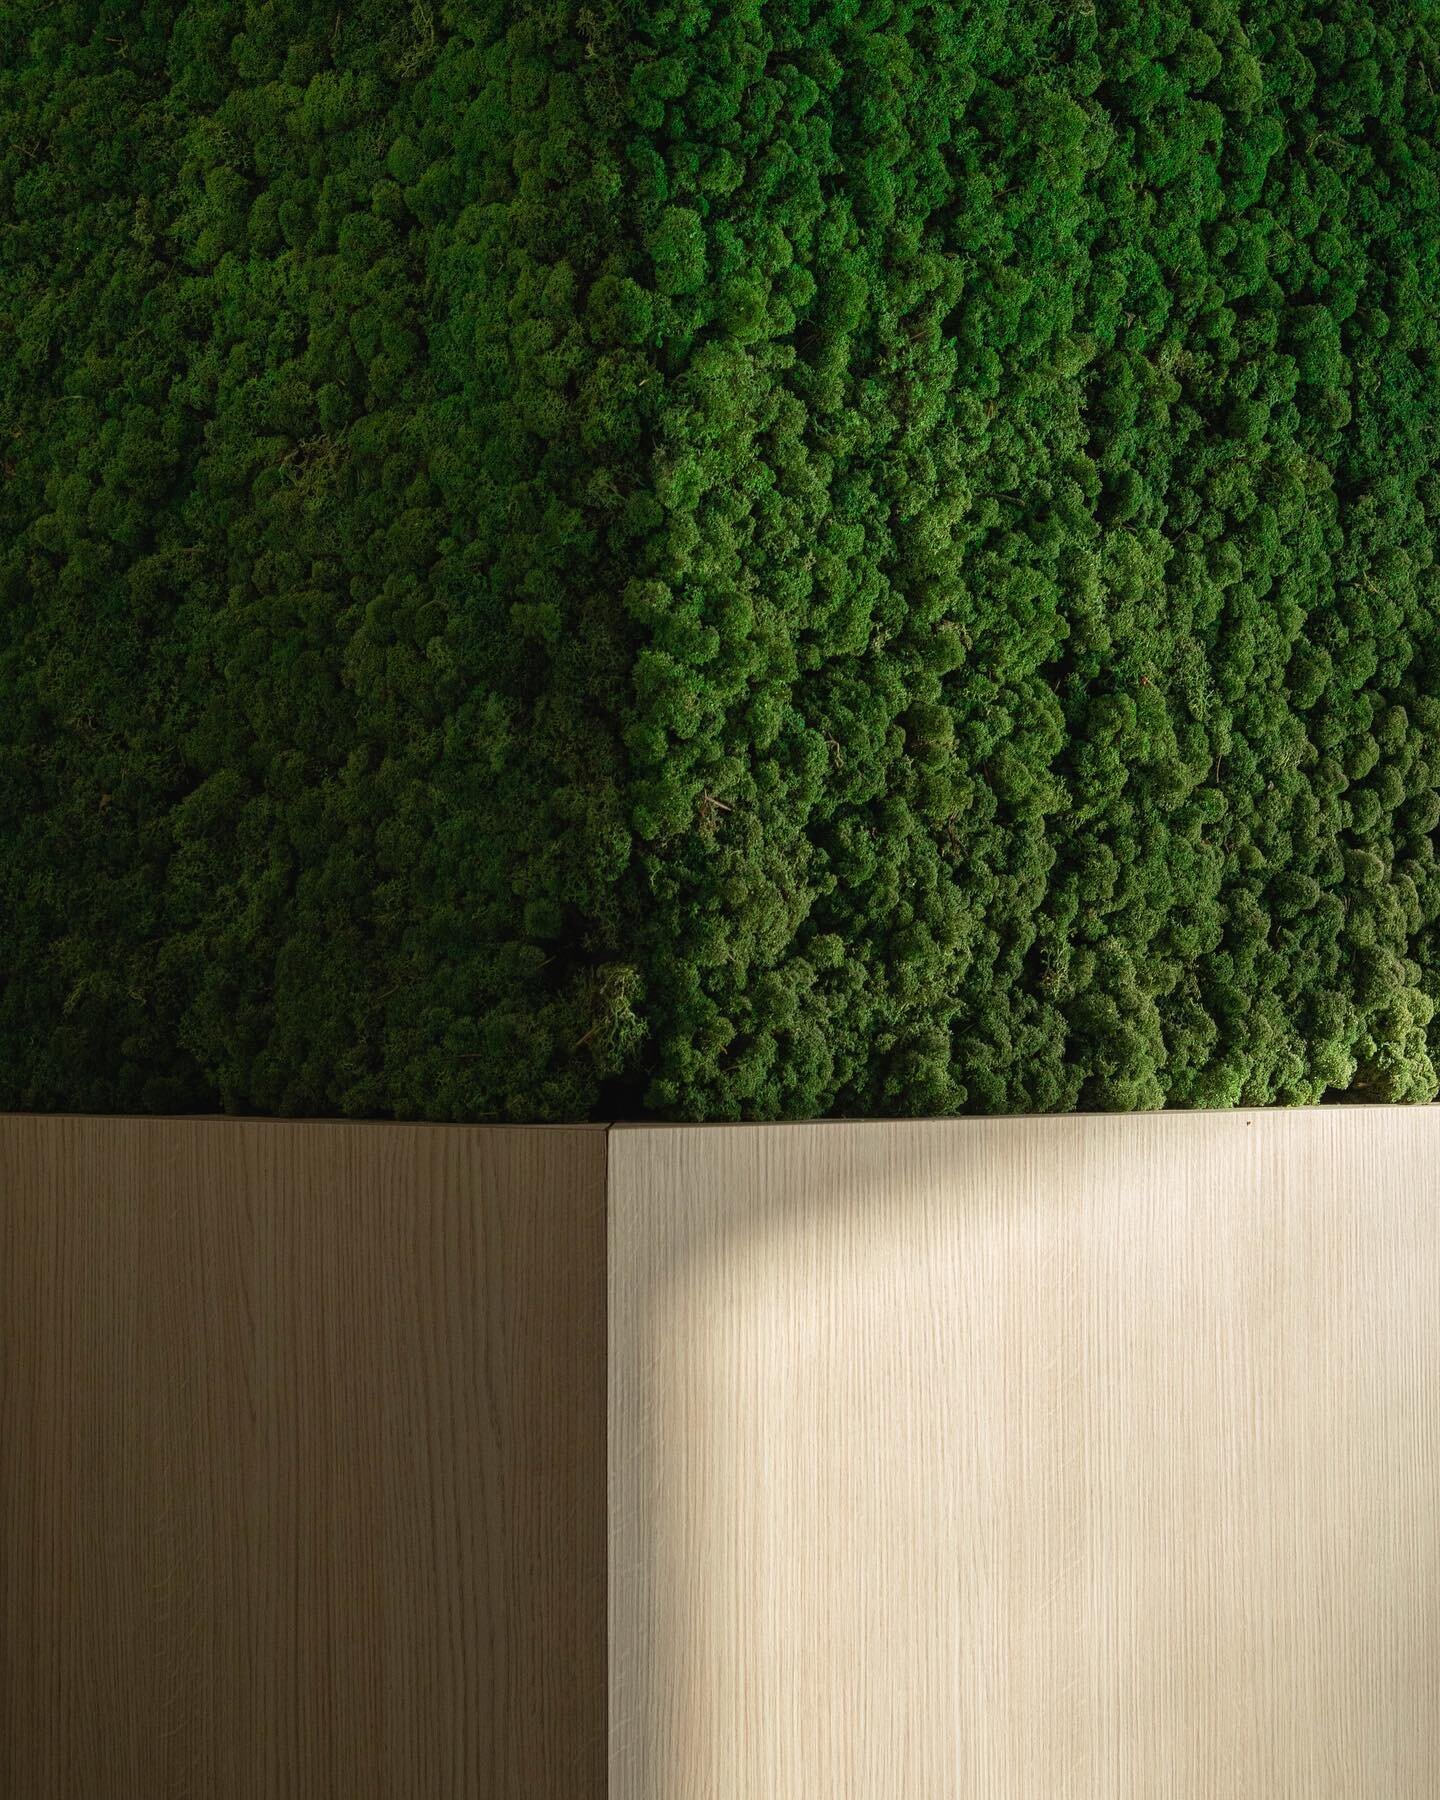 We werken met natuurlijke materialen, zoals mos. 
Dit zorgt voor een gezonde werk (of leef) omgeving en een goede luchtvochtigheid.🌿
📸 @_franshoek 
.
.
.
#mos #architectuur #livingwall #verticalgarden #utiliteitsbouw #utiliteitsbouwproject #interie